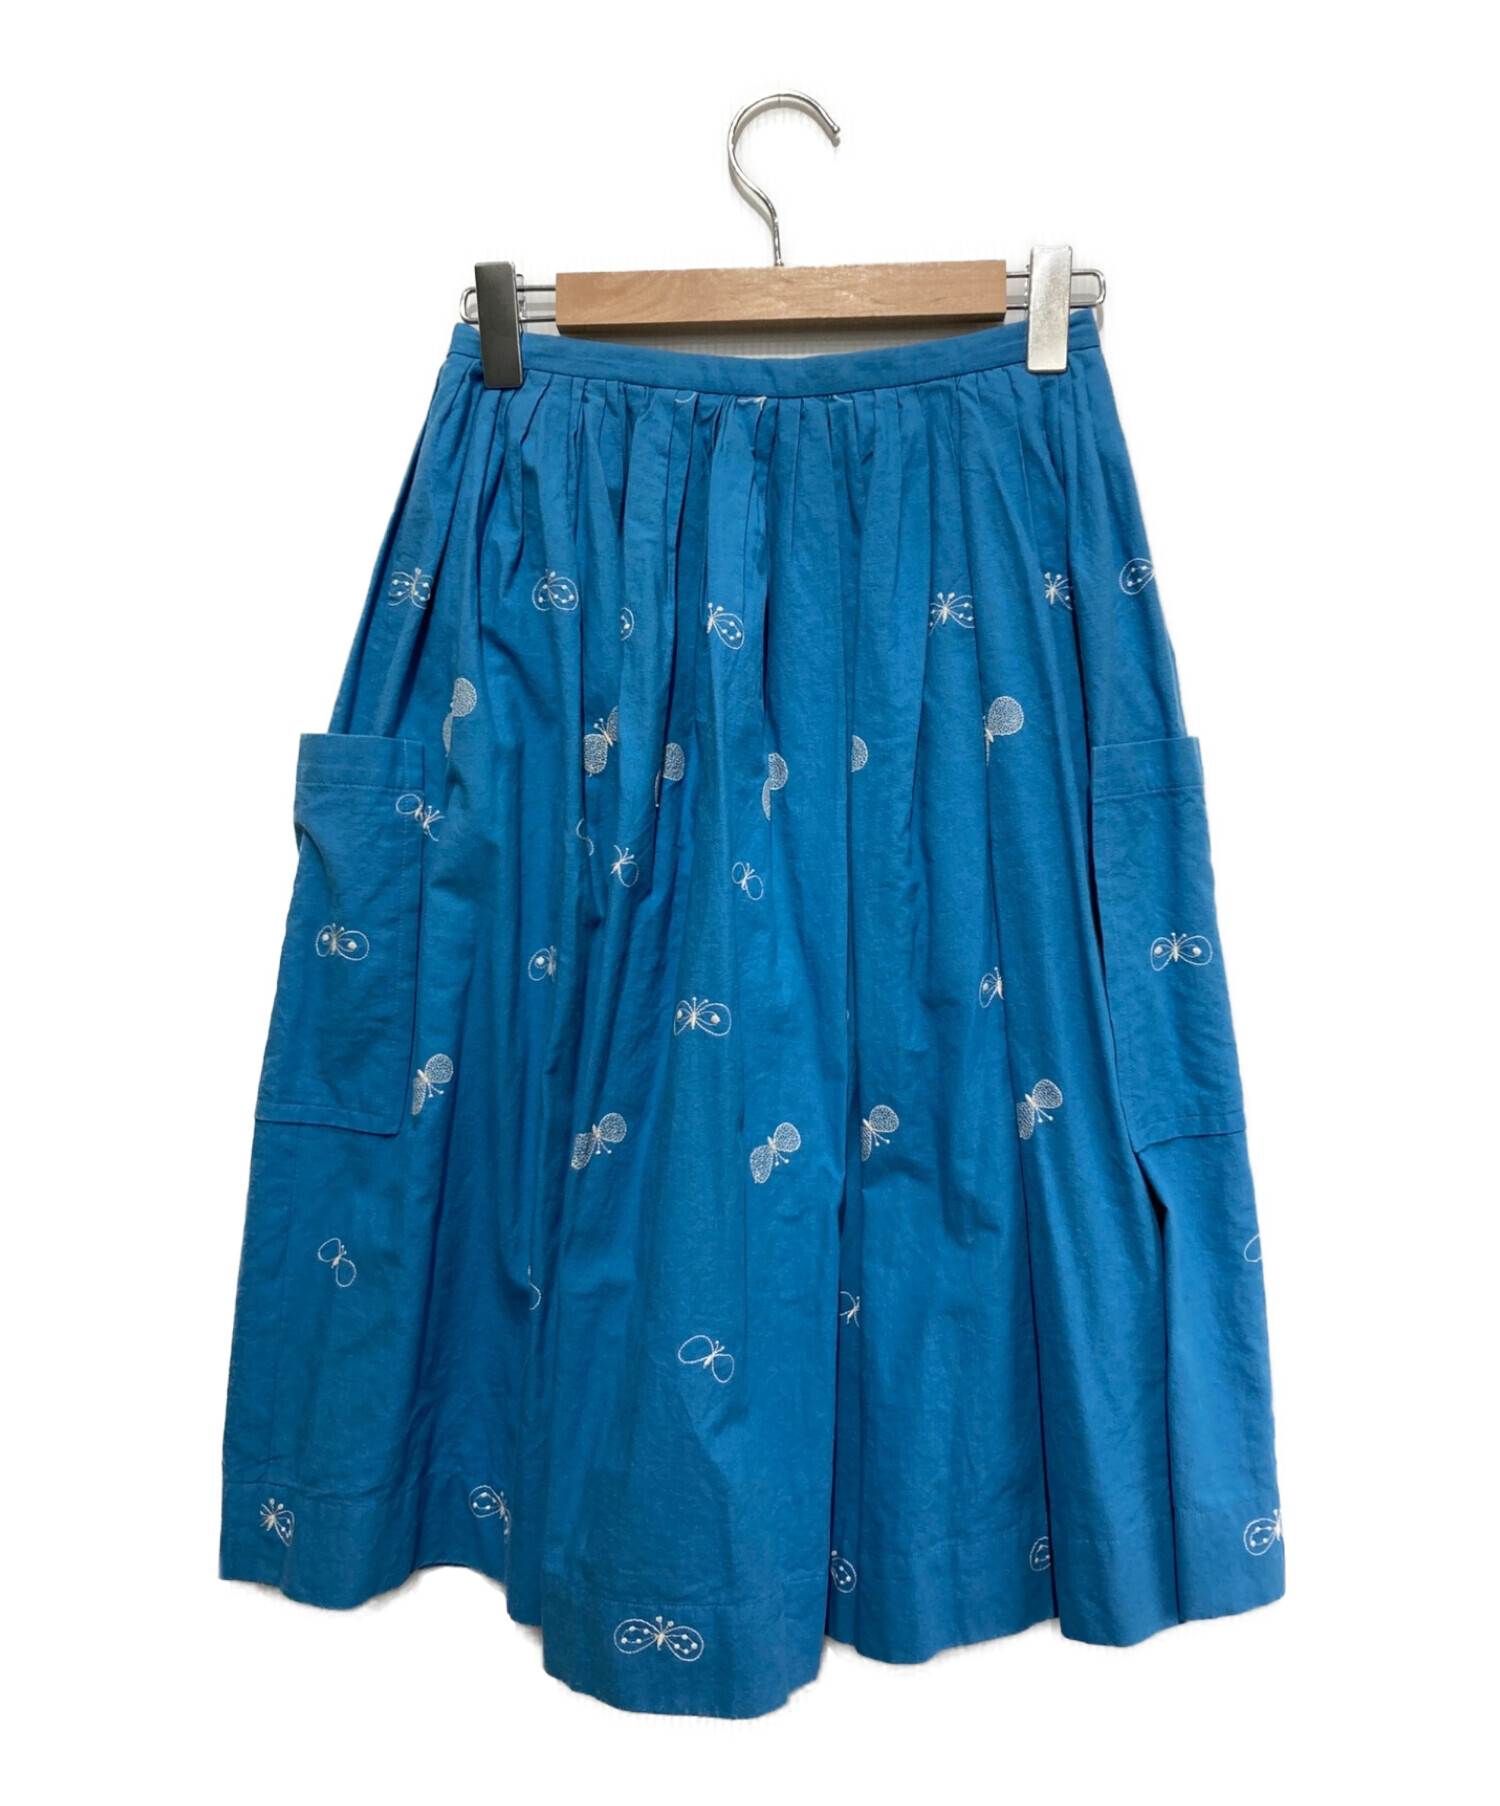 ミナペルホネン chouchoスカート サイズ38 - ひざ丈スカート